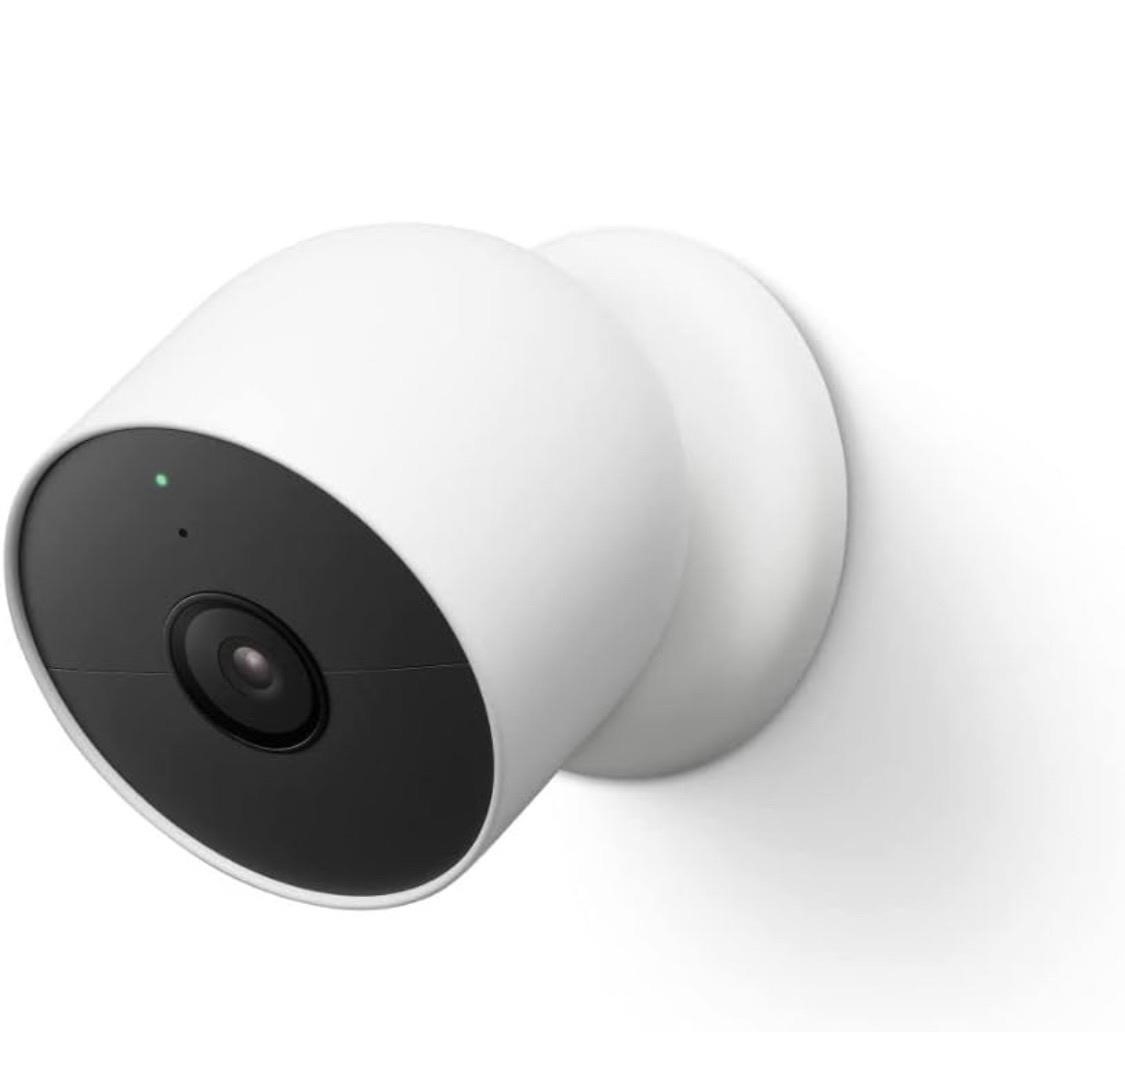 $176 Google Nest Cam Outdoor or Indoor, 2nd Gen